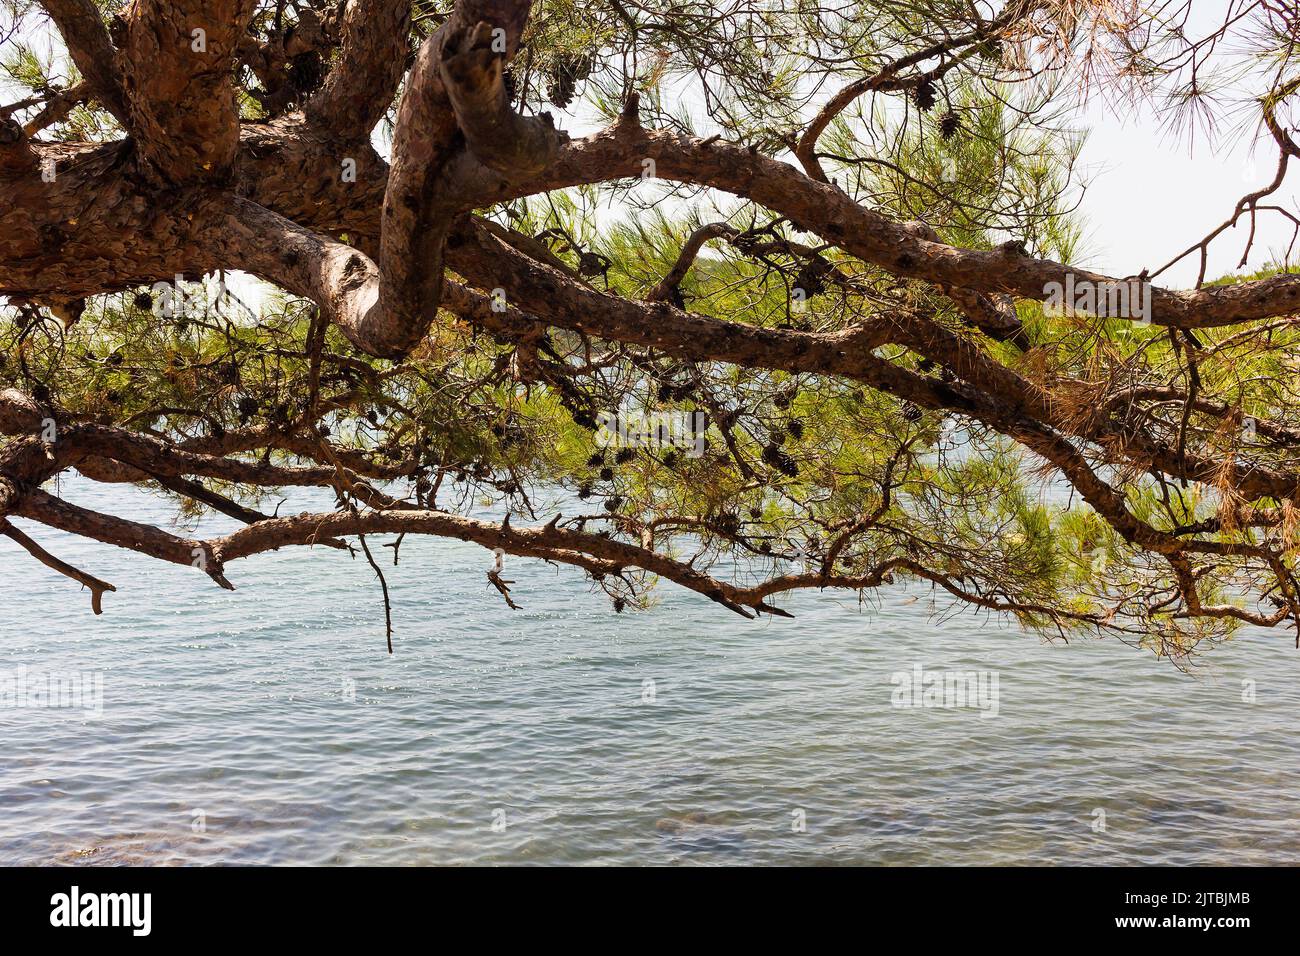 Vista ravvicinata di un pino chiamato Pinus brutia nella costa egea della Turchia. E' una giornata estiva di sole. Foto Stock